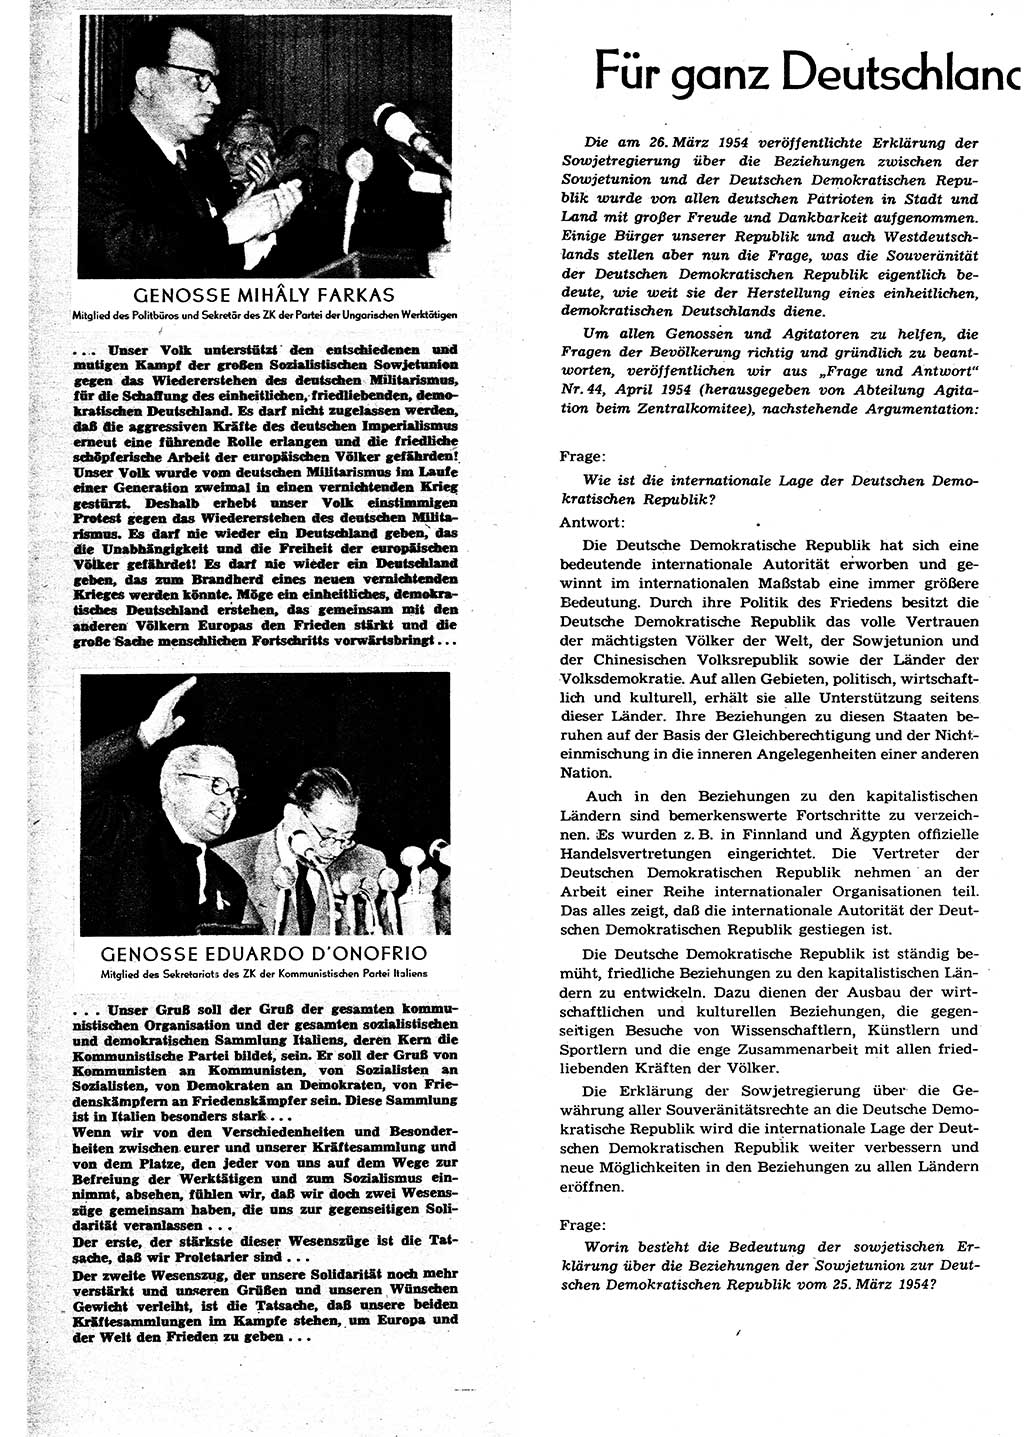 Neuer Weg (NW), Organ des Zentralkomitees (ZK) der SED (Sozialistische Einheitspartei Deutschlands) für alle Parteiarbeiter, 9. Jahrgang [Deutsche Demokratische Republik (DDR)] 1954, Heft 8/10 (NW ZK SED DDR 1954, H. 8/10)